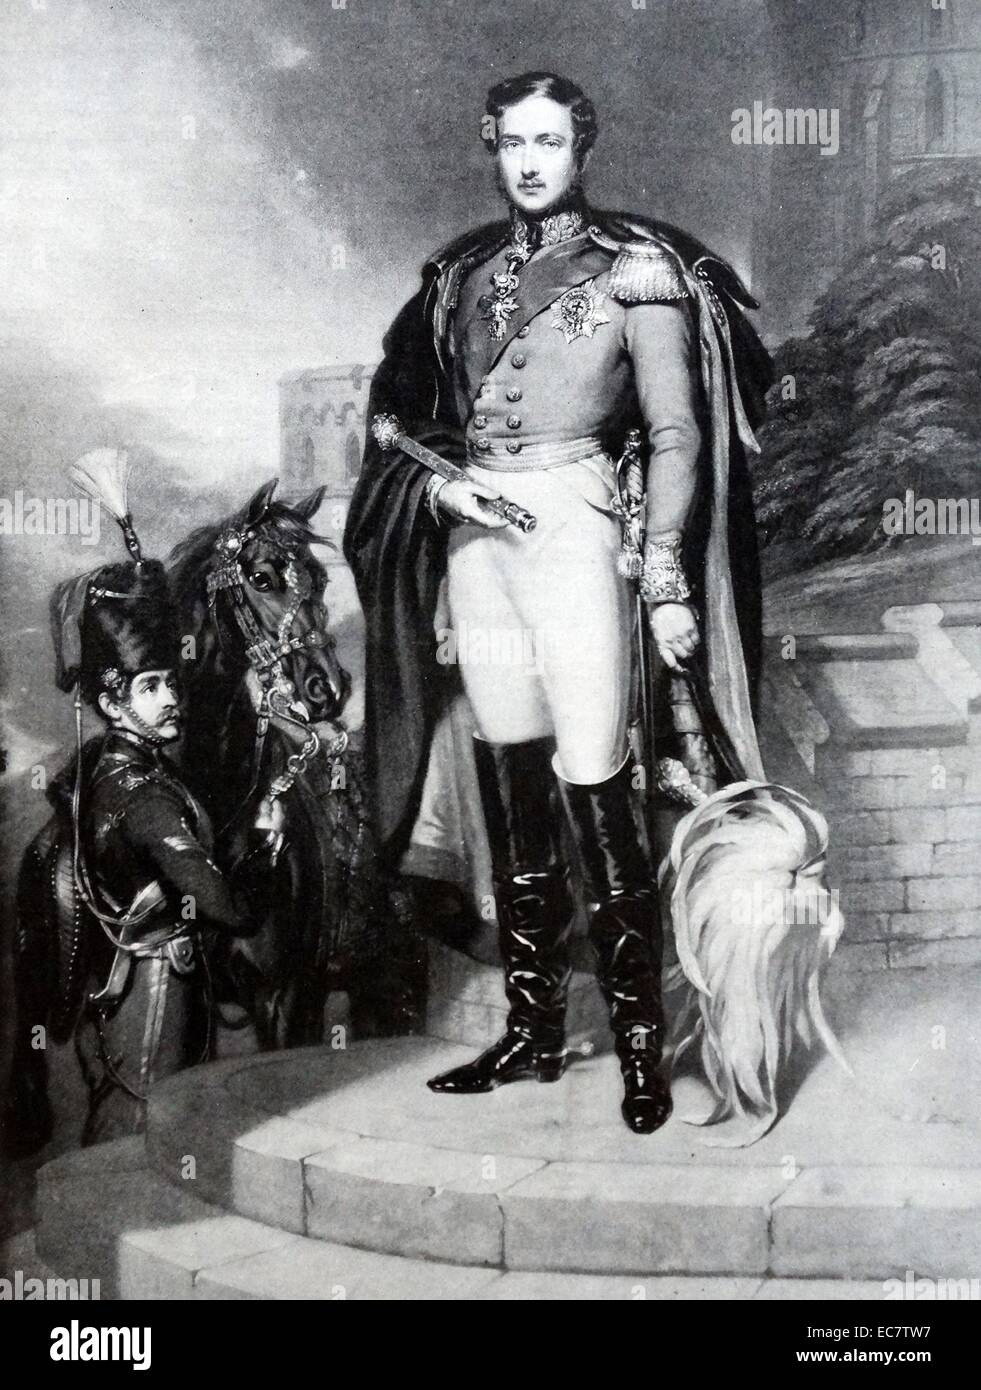 El Príncipe Alberto de Sajonia-coburgo y Gotha (el Príncipe Consorte). 26 de agosto de 1819 - 14 de diciembre de 1861)esposo de la Reina Victoria del Reino Unido de Gran Bretaña e Irlanda. Foto de stock